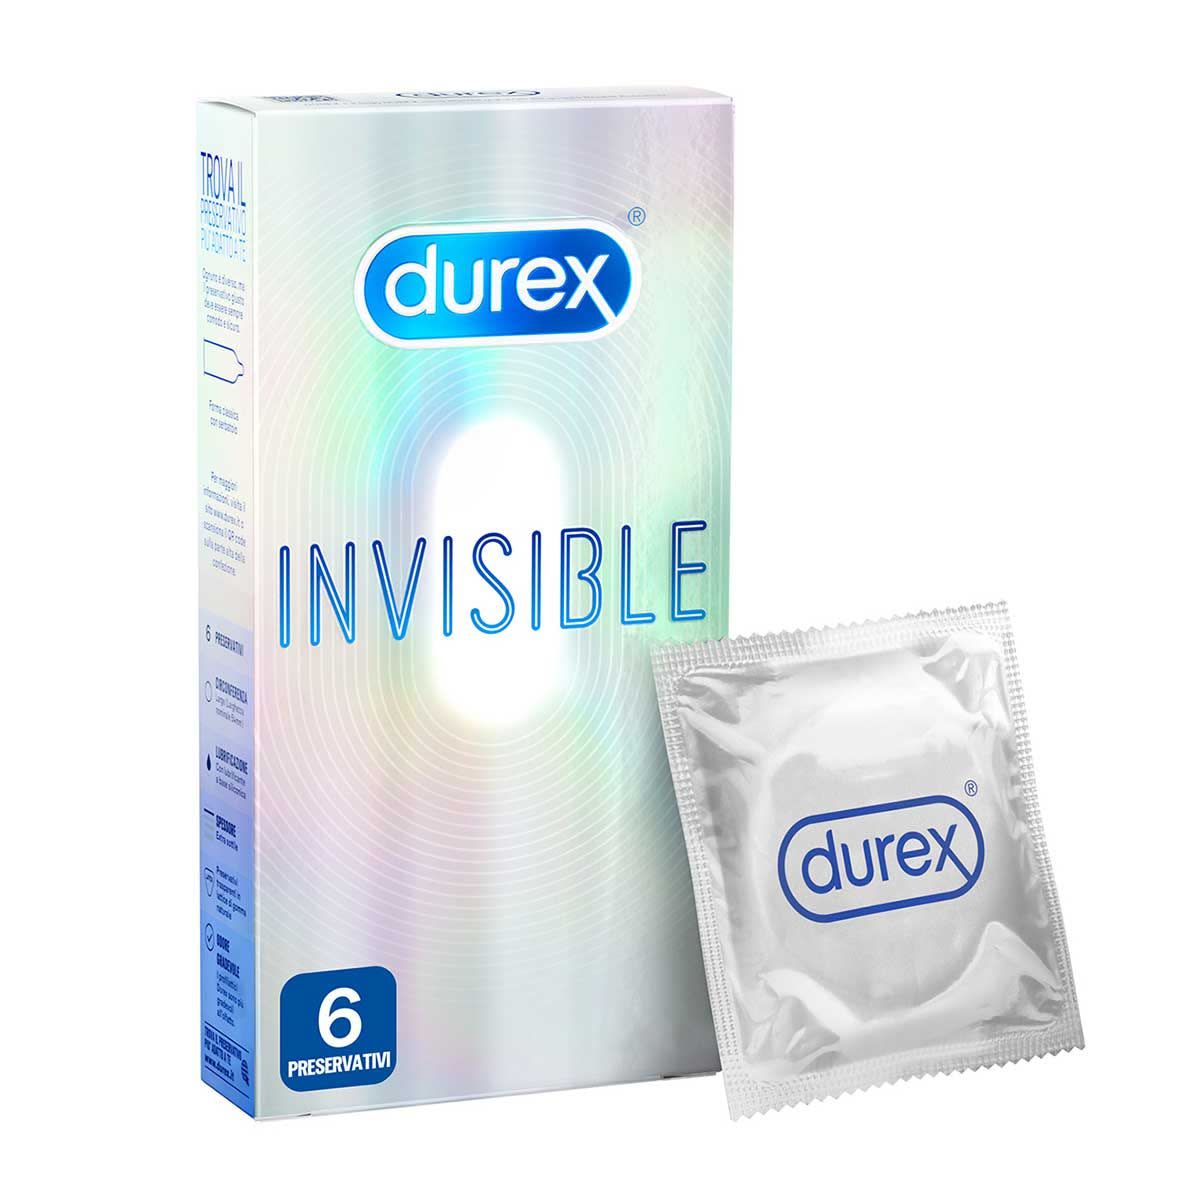 970335232 - Durex Invisible 6 Profilattici - 7862905_2.jpg